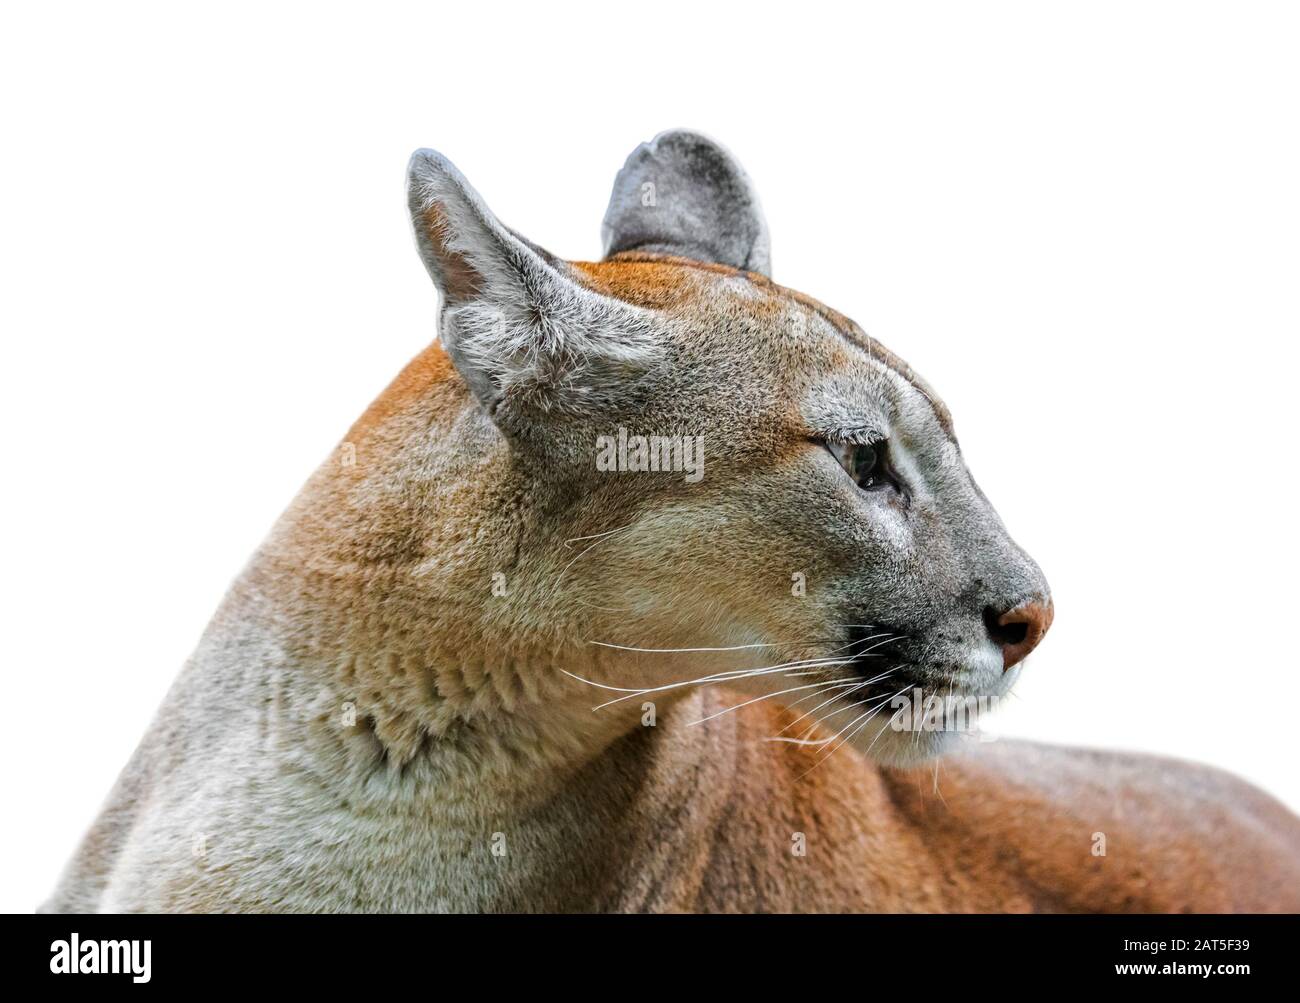 Primo piano ritratto di cougar / puma / leone di montagna / pantera (Puma concolor) su sfondo bianco Foto Stock